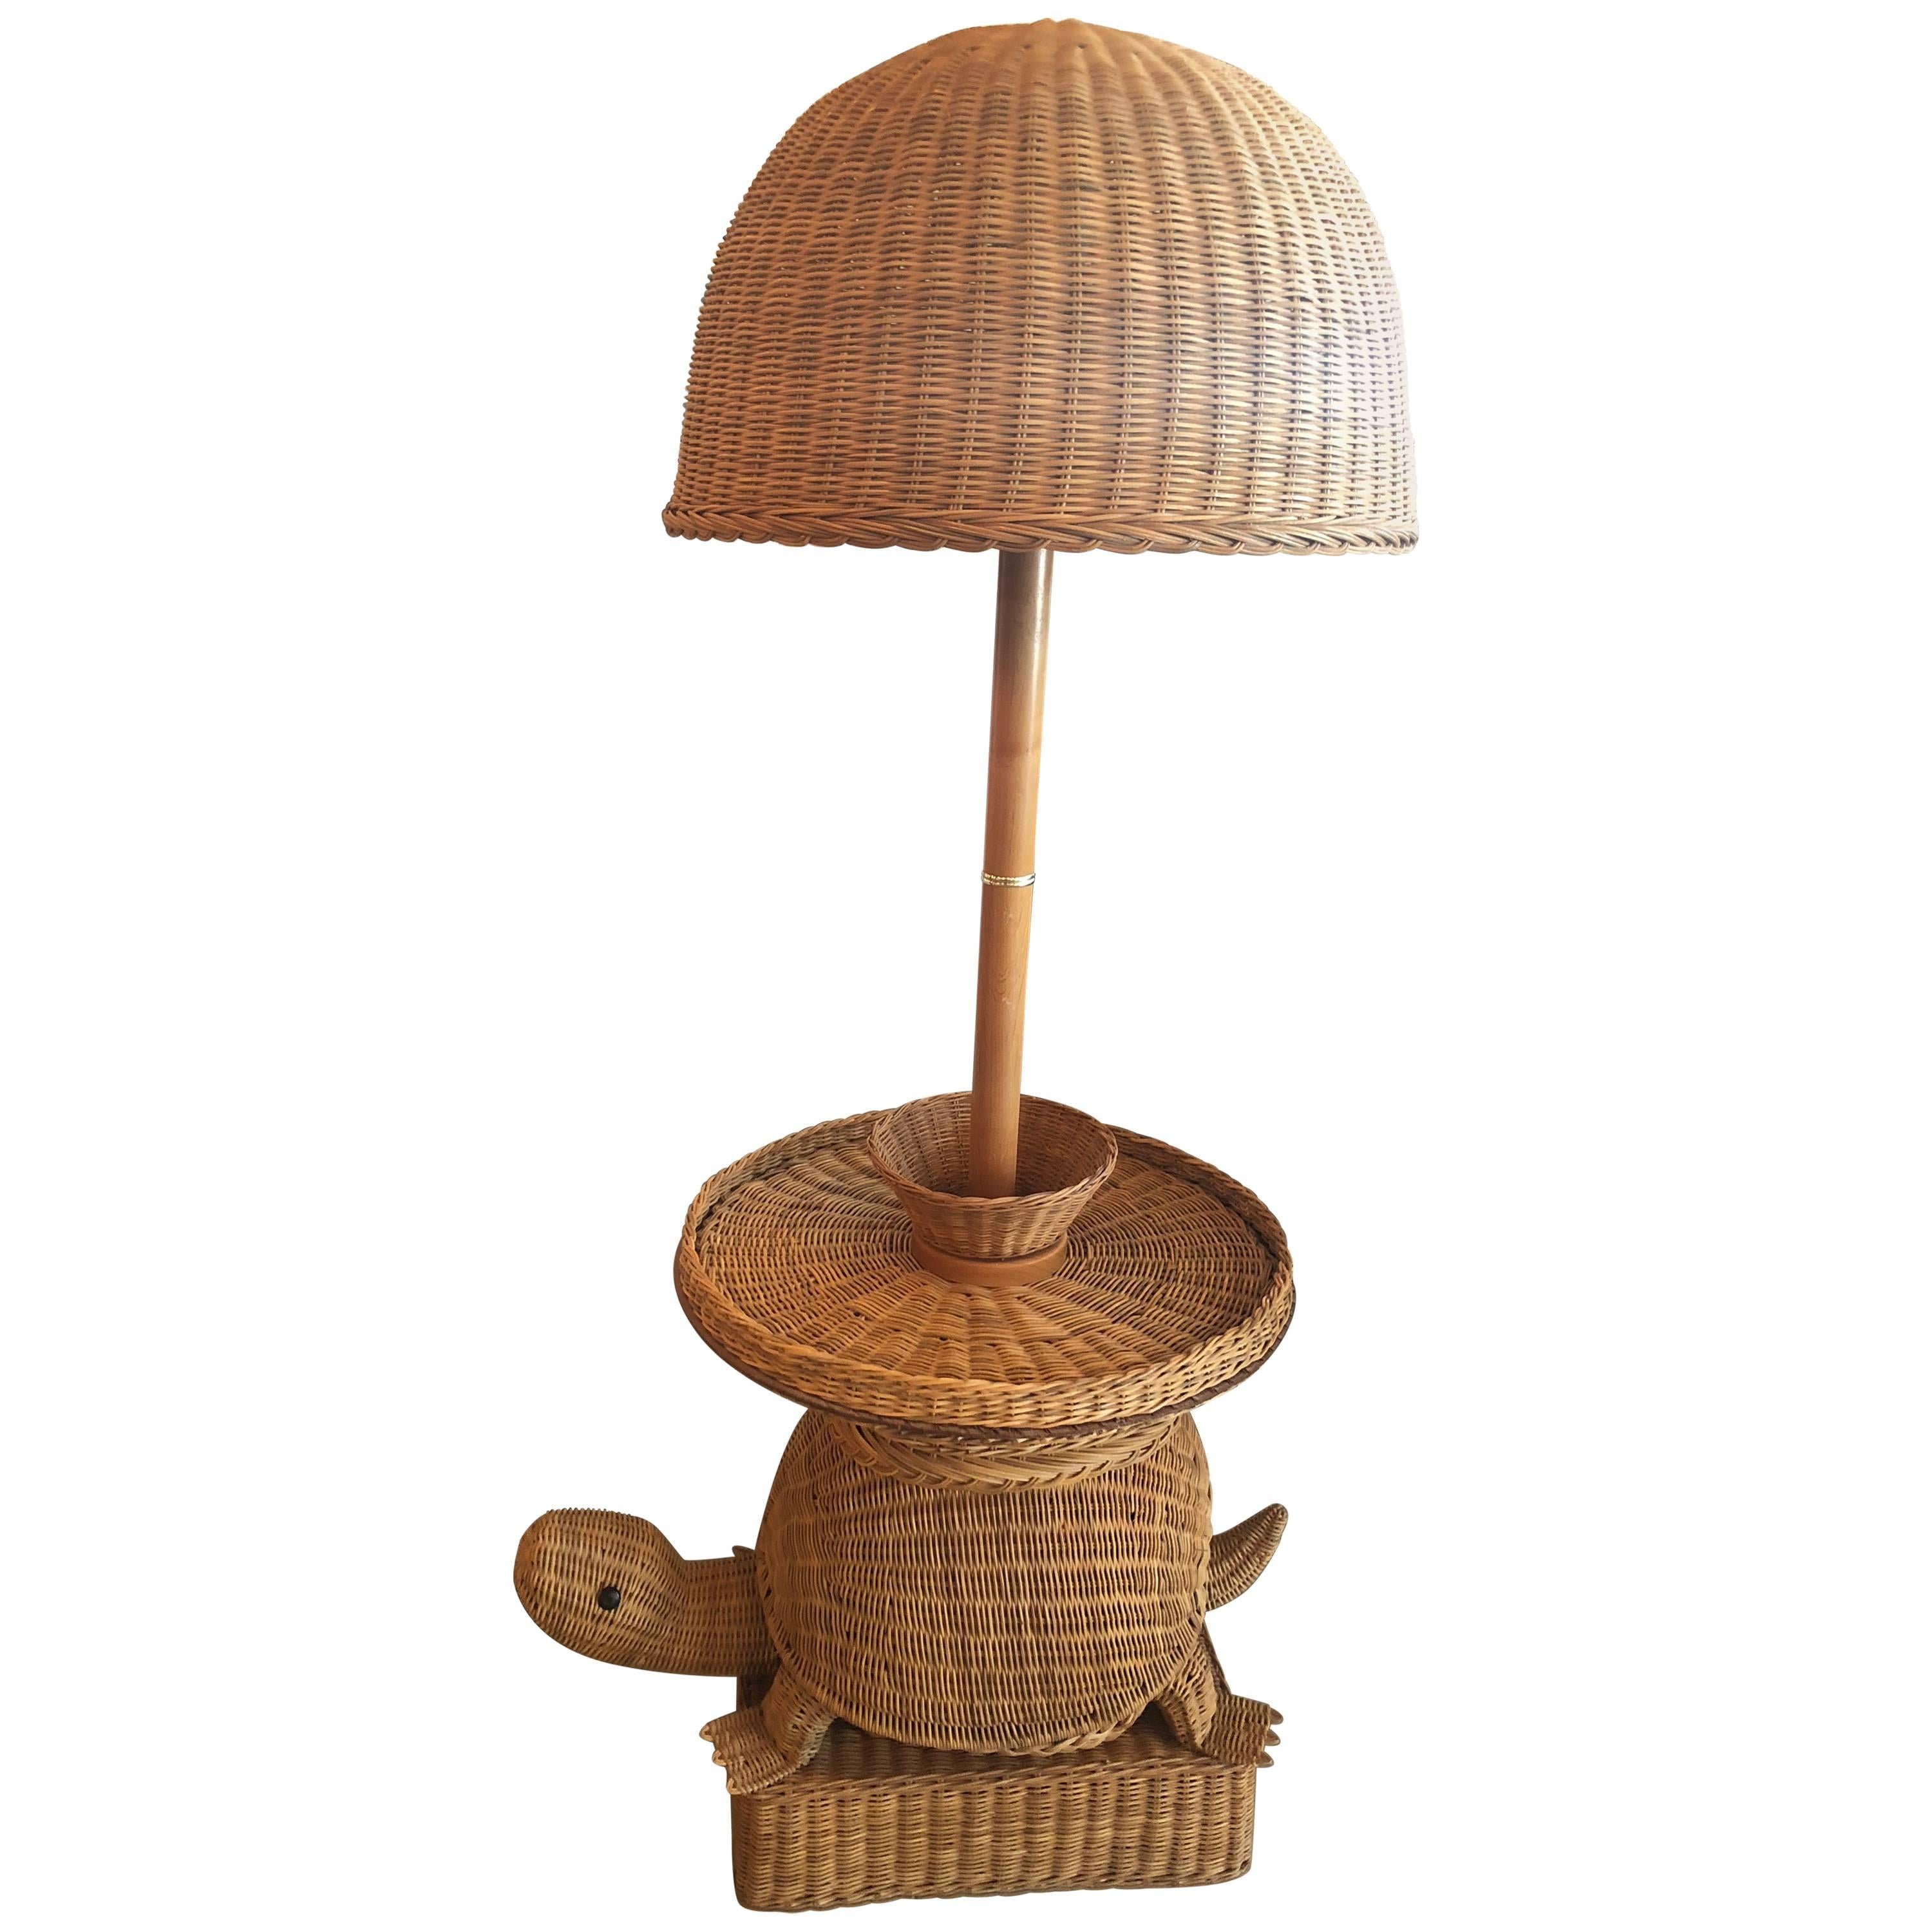 Vintage Tropical Wicker Turtle Side End Table Floor Lamp